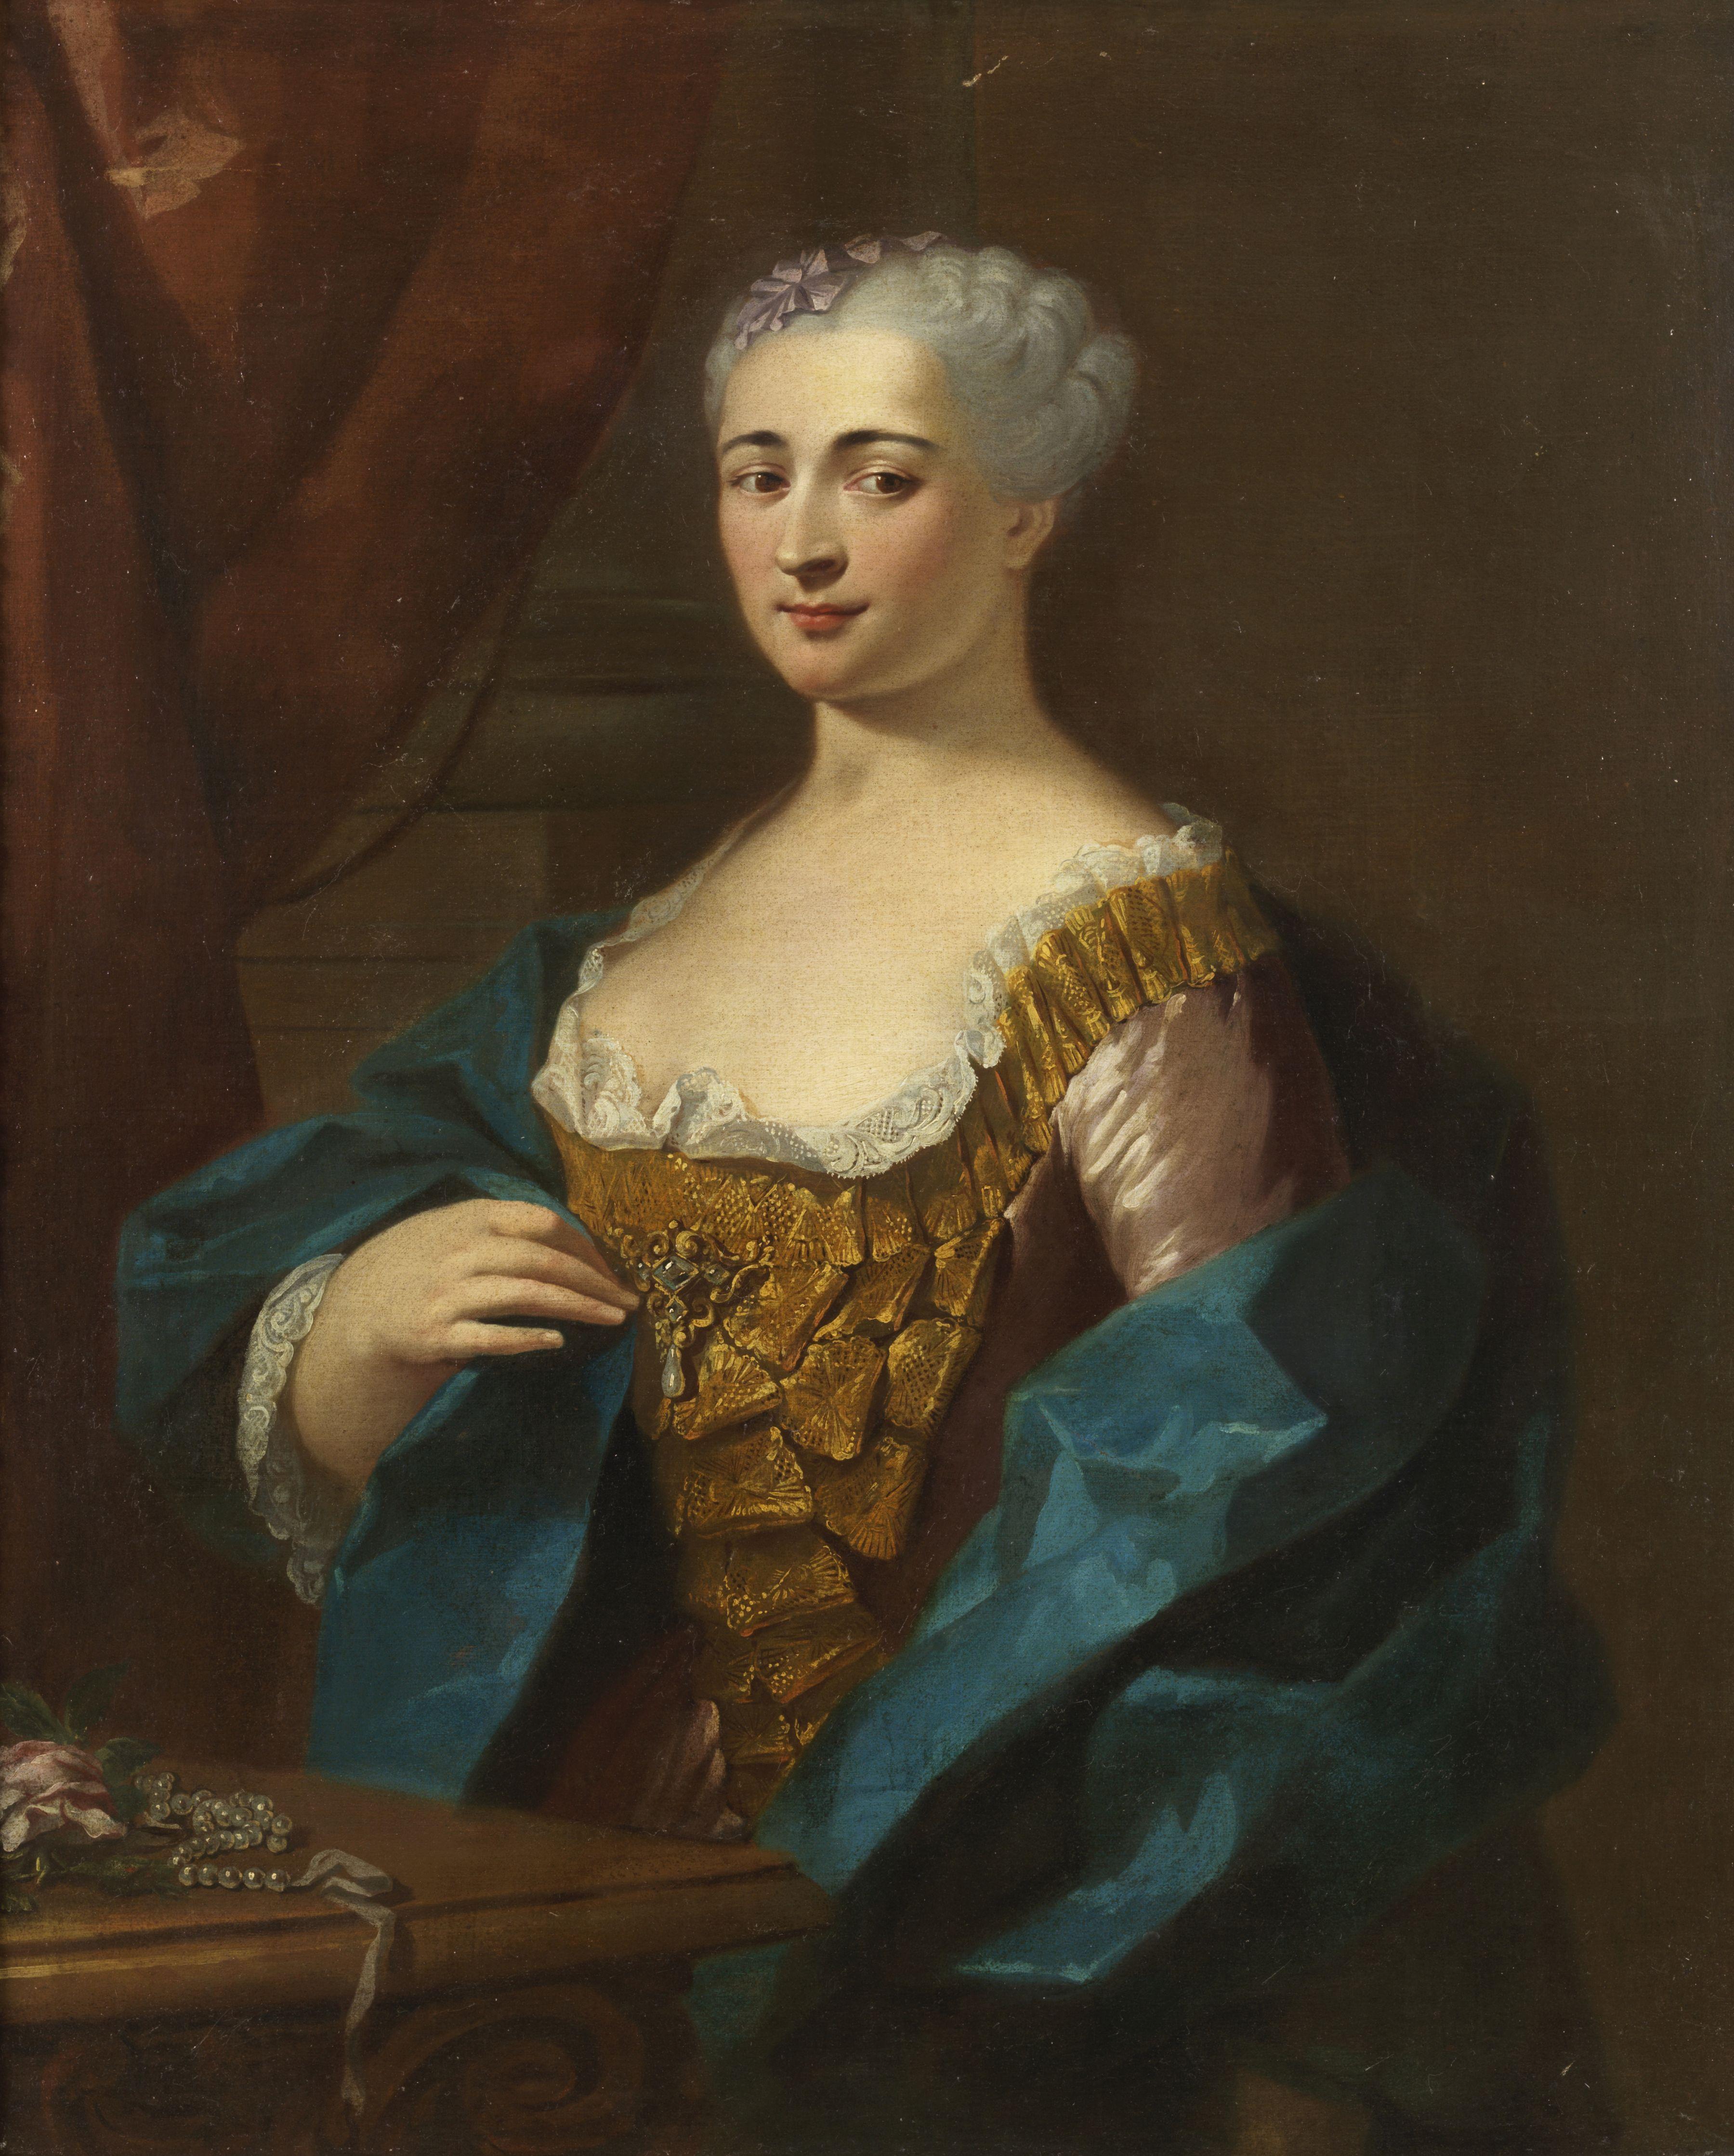 Gemälde Öl auf Leinwand, 92 x 75 cm ohne Rahmen und 102 x 87 cm mit Rahmen, das eine reiche Dame der französischen Schule der ersten Hälfte des 18. Jahrhunderts darstellt.

In seiner formalen Vereinfachung verkennt dieses schlichte Bild mit dem